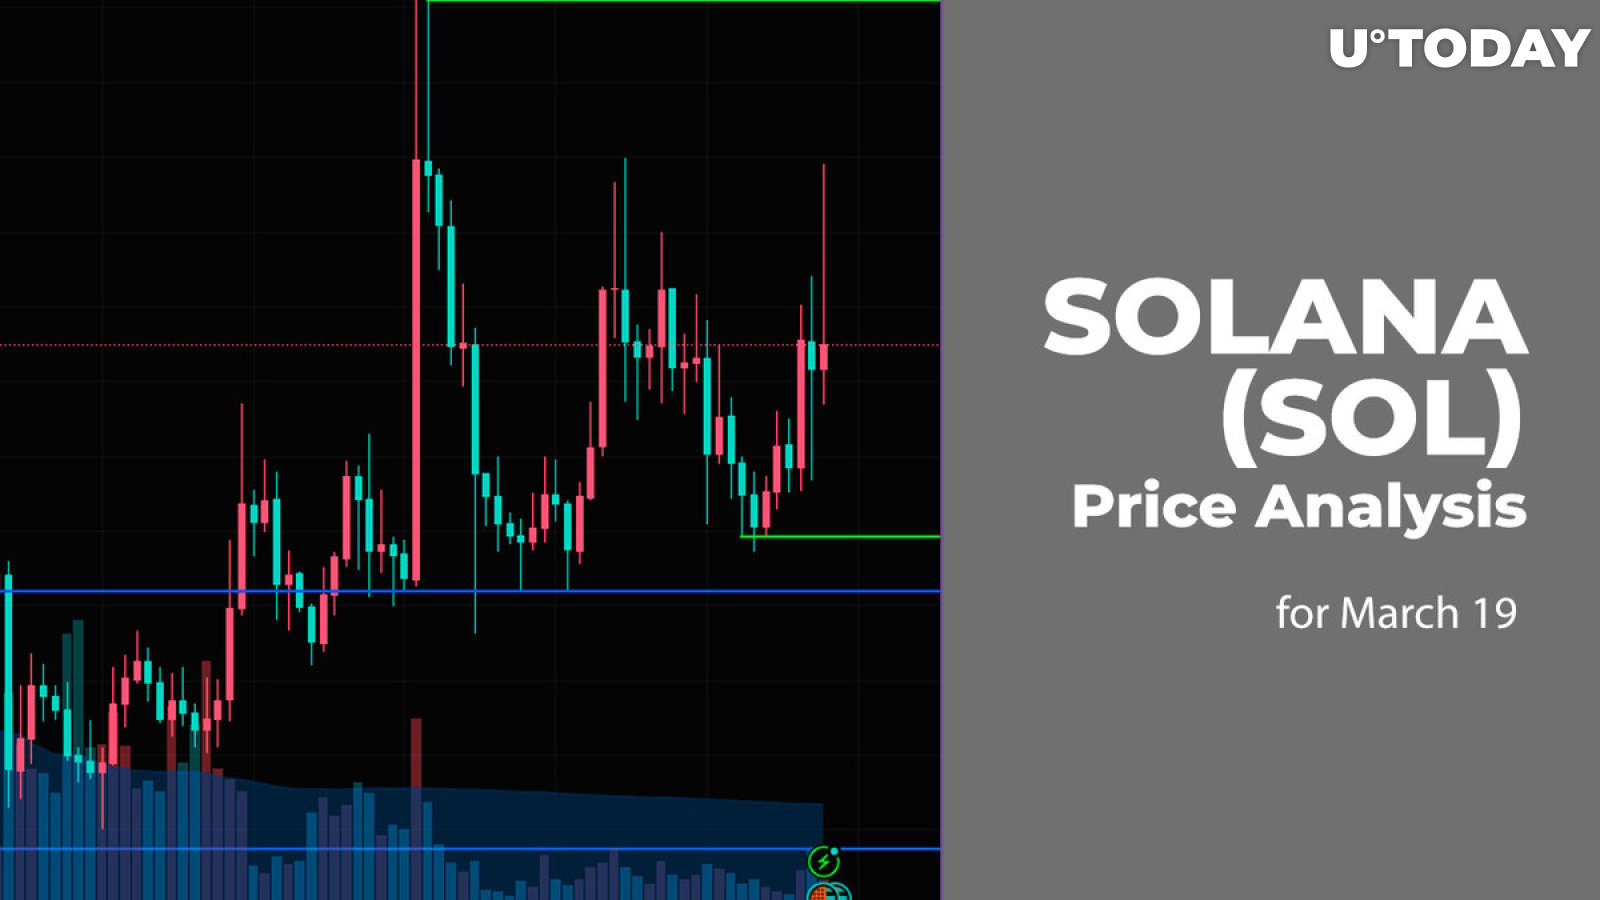 Solana (SOL) Price Prediction for March 19